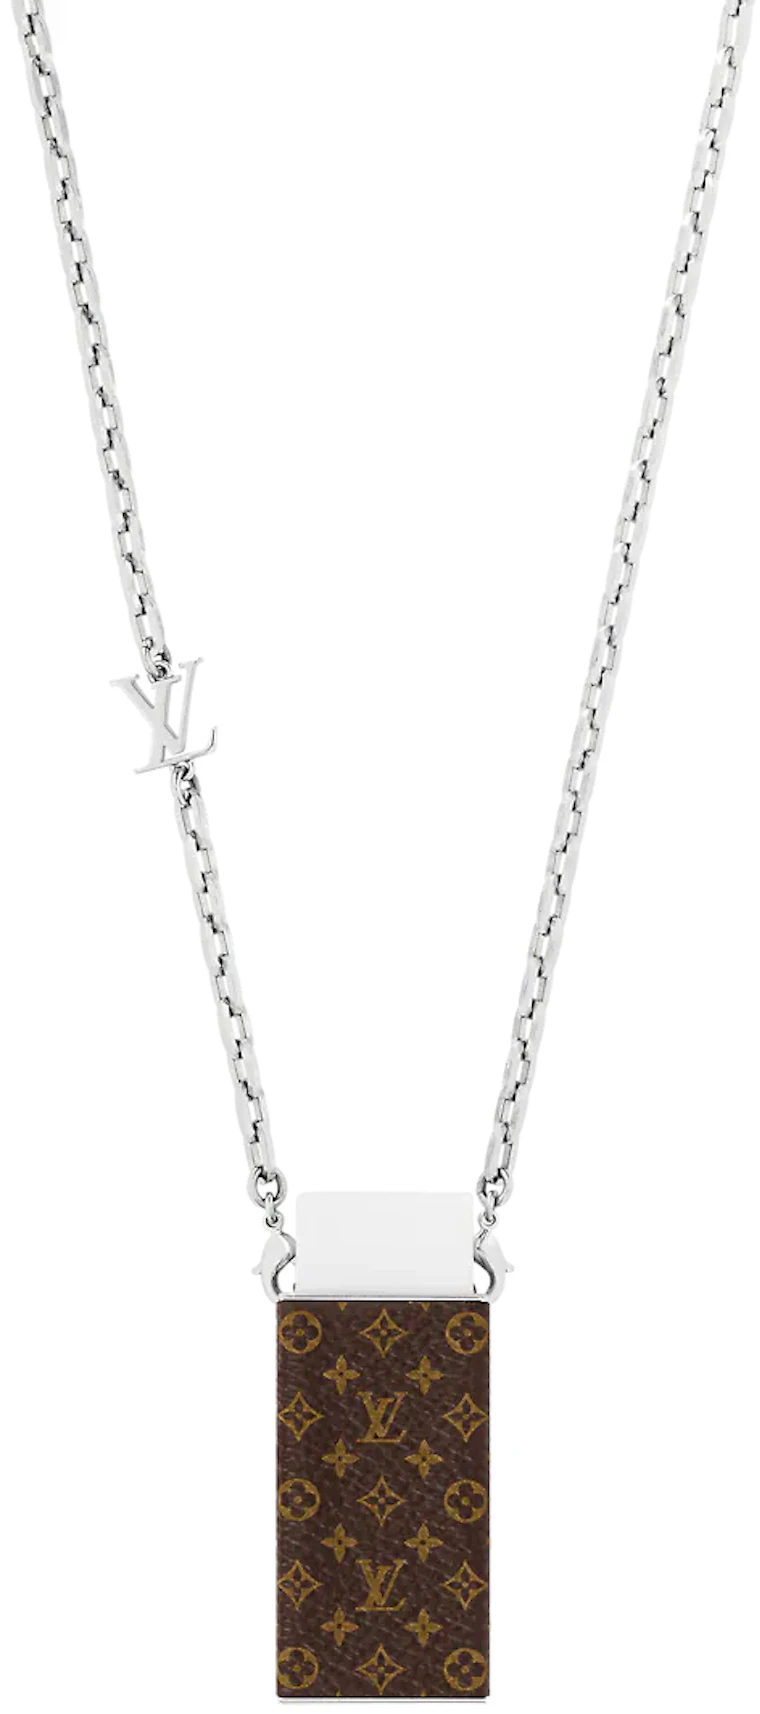 Louis Vuitton necklace: Bạn là một fan của phong cách thời trang sang trọng và đẳng cấp? Hãy cùng xem hình ảnh của chiếc dây chuyền Louis Vuitton và thưởng thức chi tiết tuyệt đẹp được làm từ những nguyên vật liệu đẳng cấp nhất. Đây là sự lựa chọn hoàn hảo dành cho những người yêu thích phong cách thanh lịch và đầy cá tính.